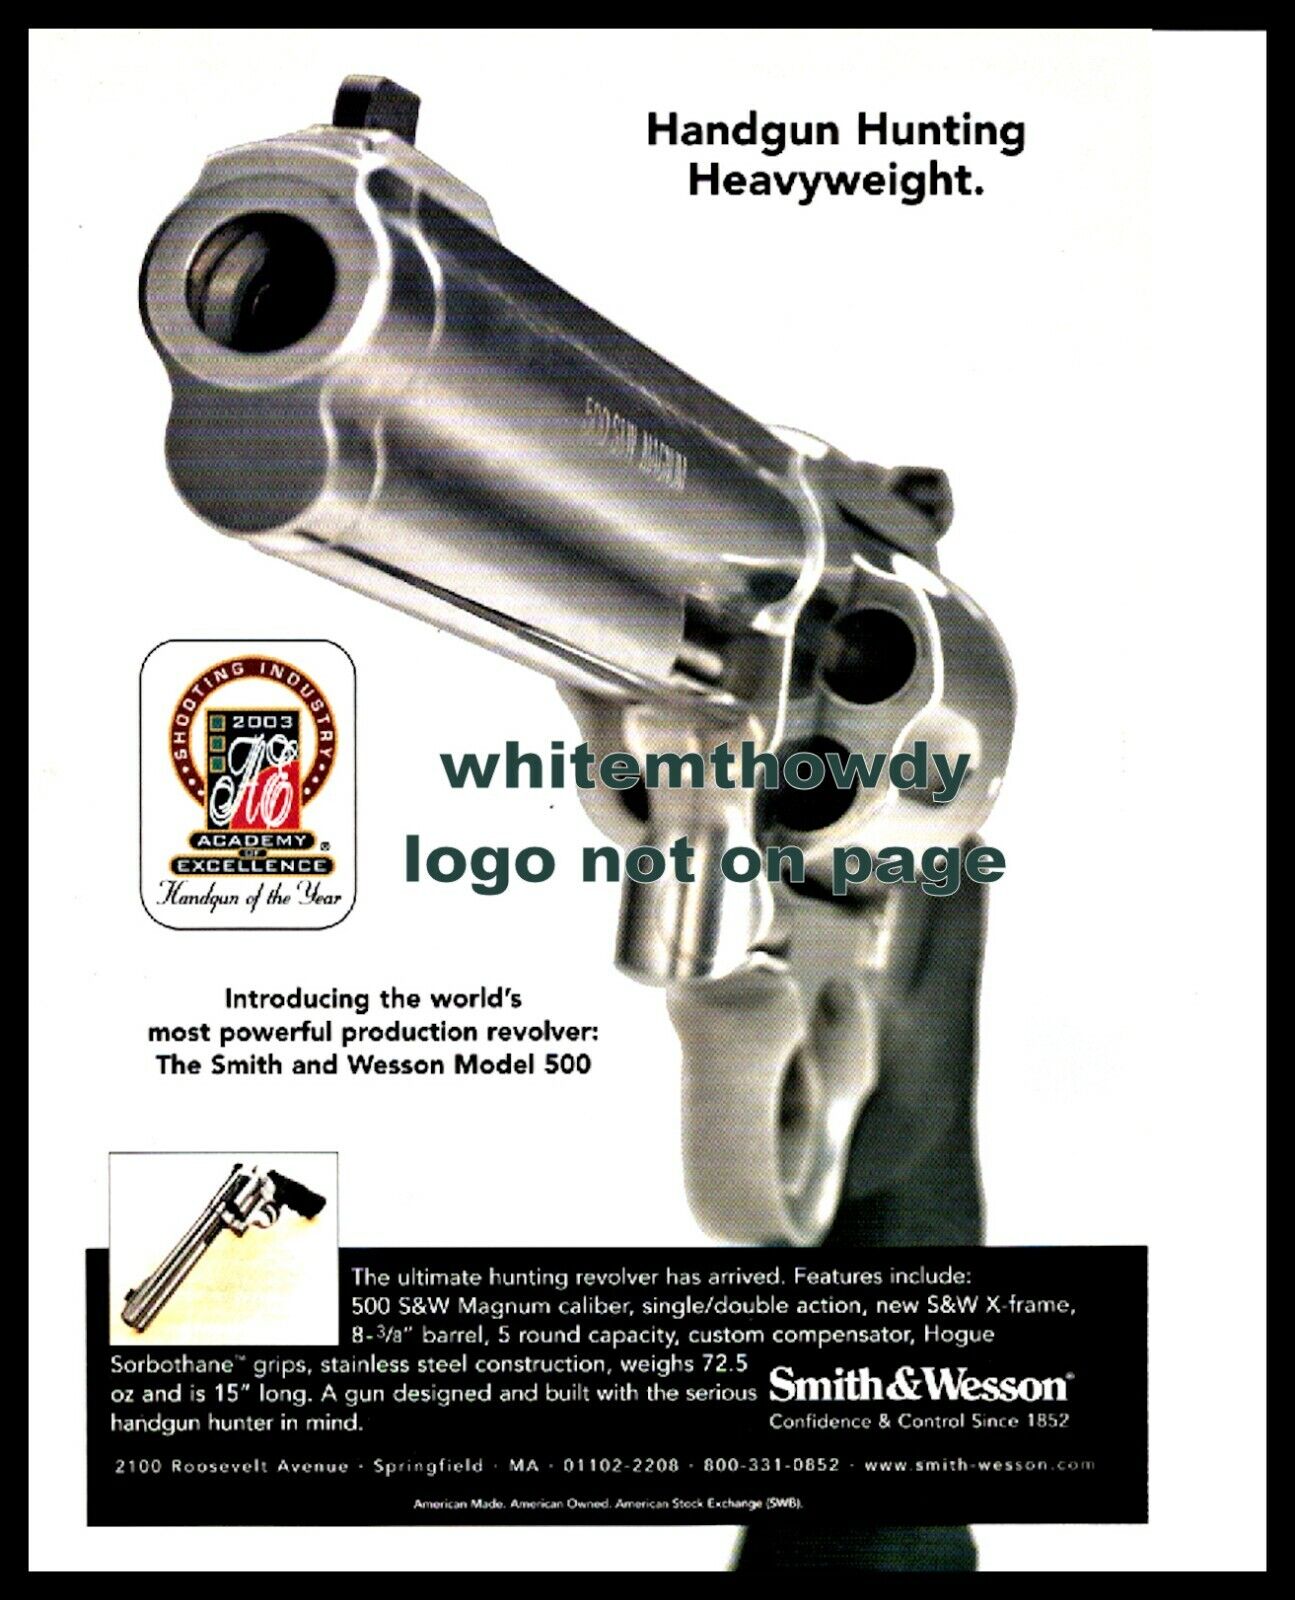 2003 SMITH & WESSON Model 500 Revolver Photo PRINT AD